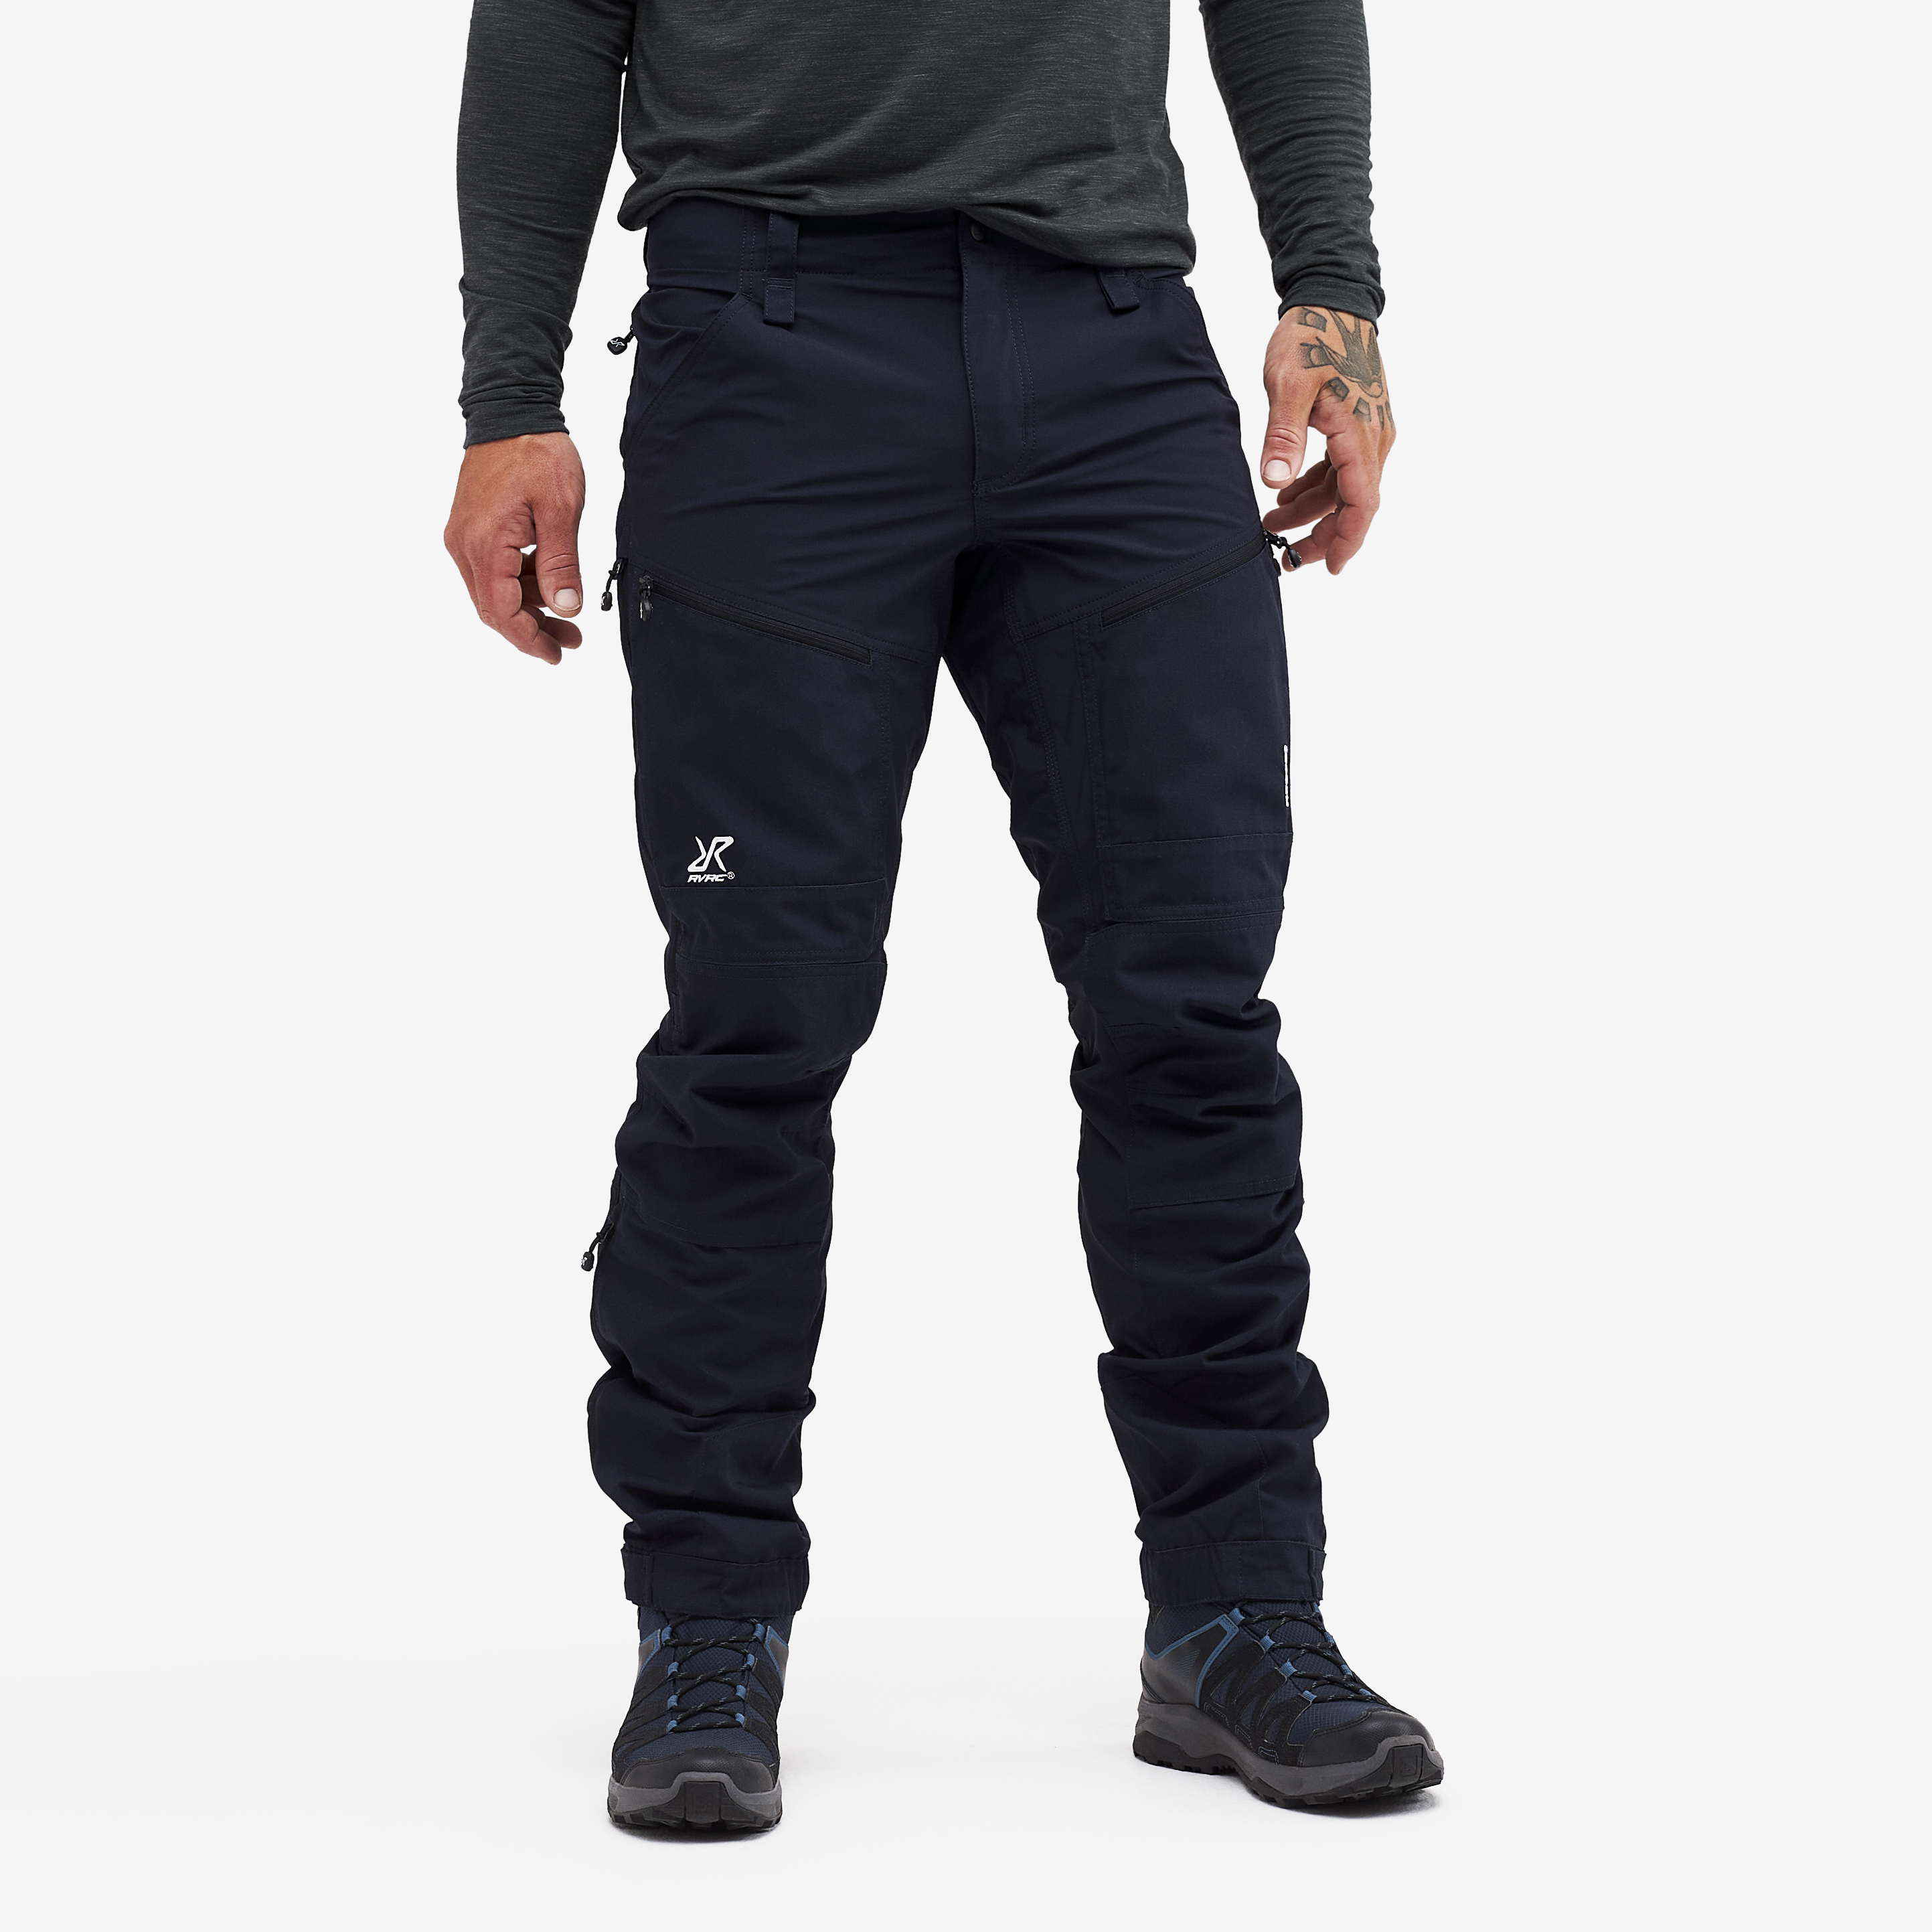 RVRC GP Pro Rescue turistické kalhoty pro muže v tmavě modré barvě